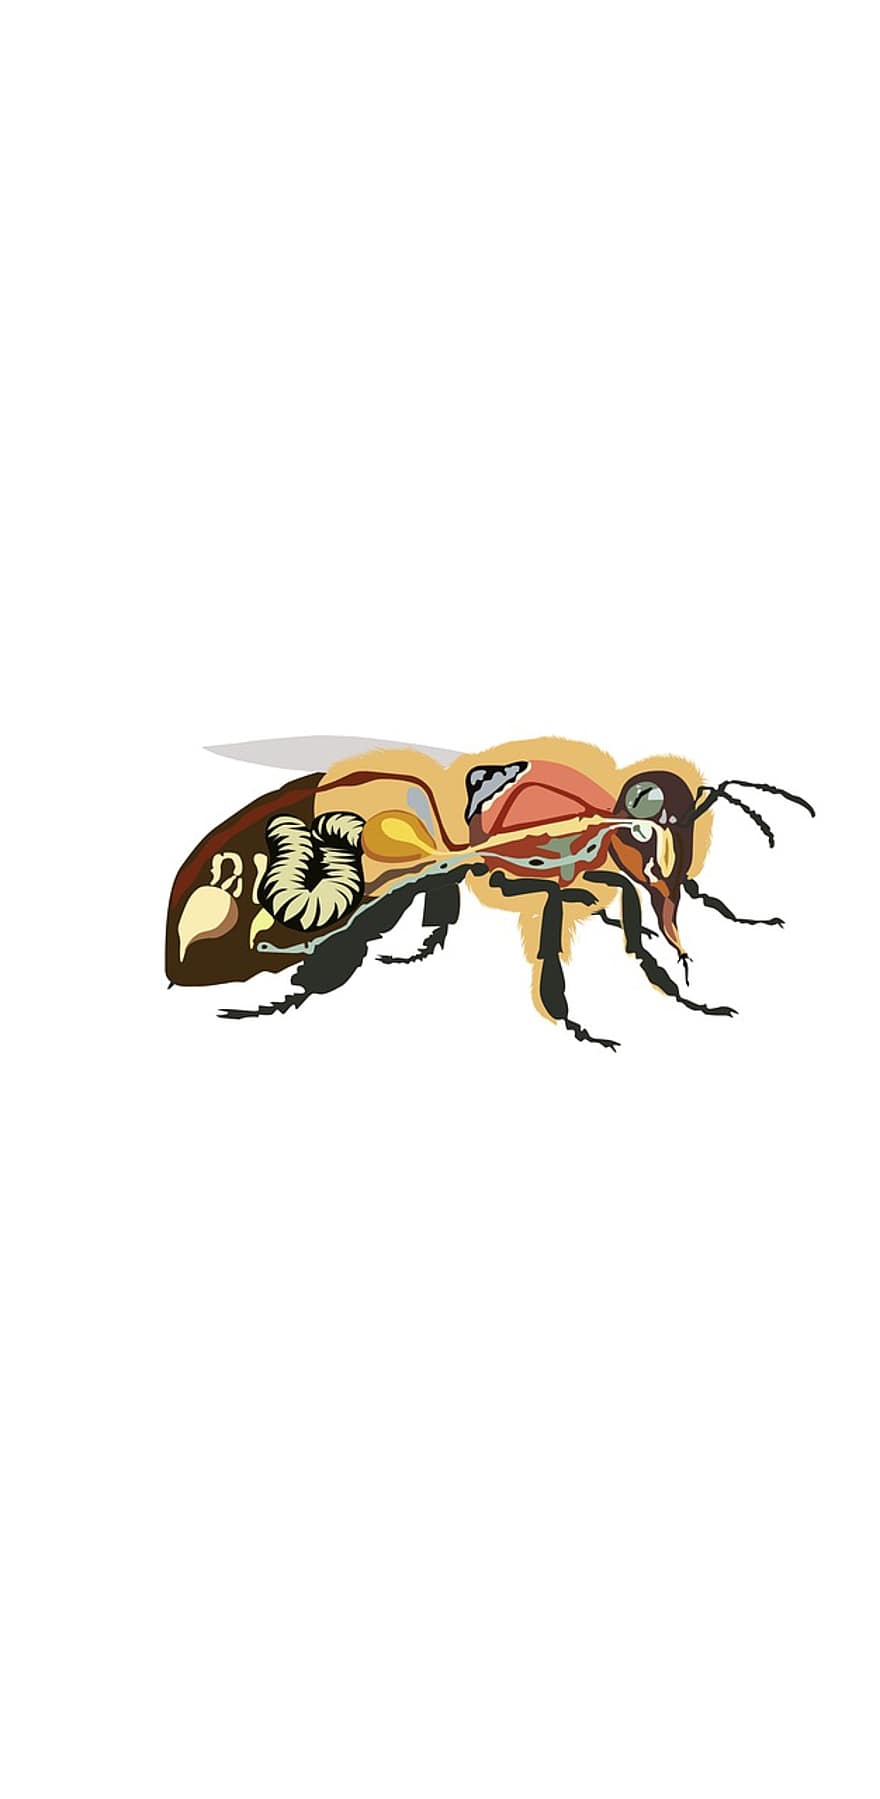 Bienenanatomie, Biene, Insekt, Honig, Bienenhonig, Anatomie, Zeichnung, Illustration, Ameise, Wespe, Vektor